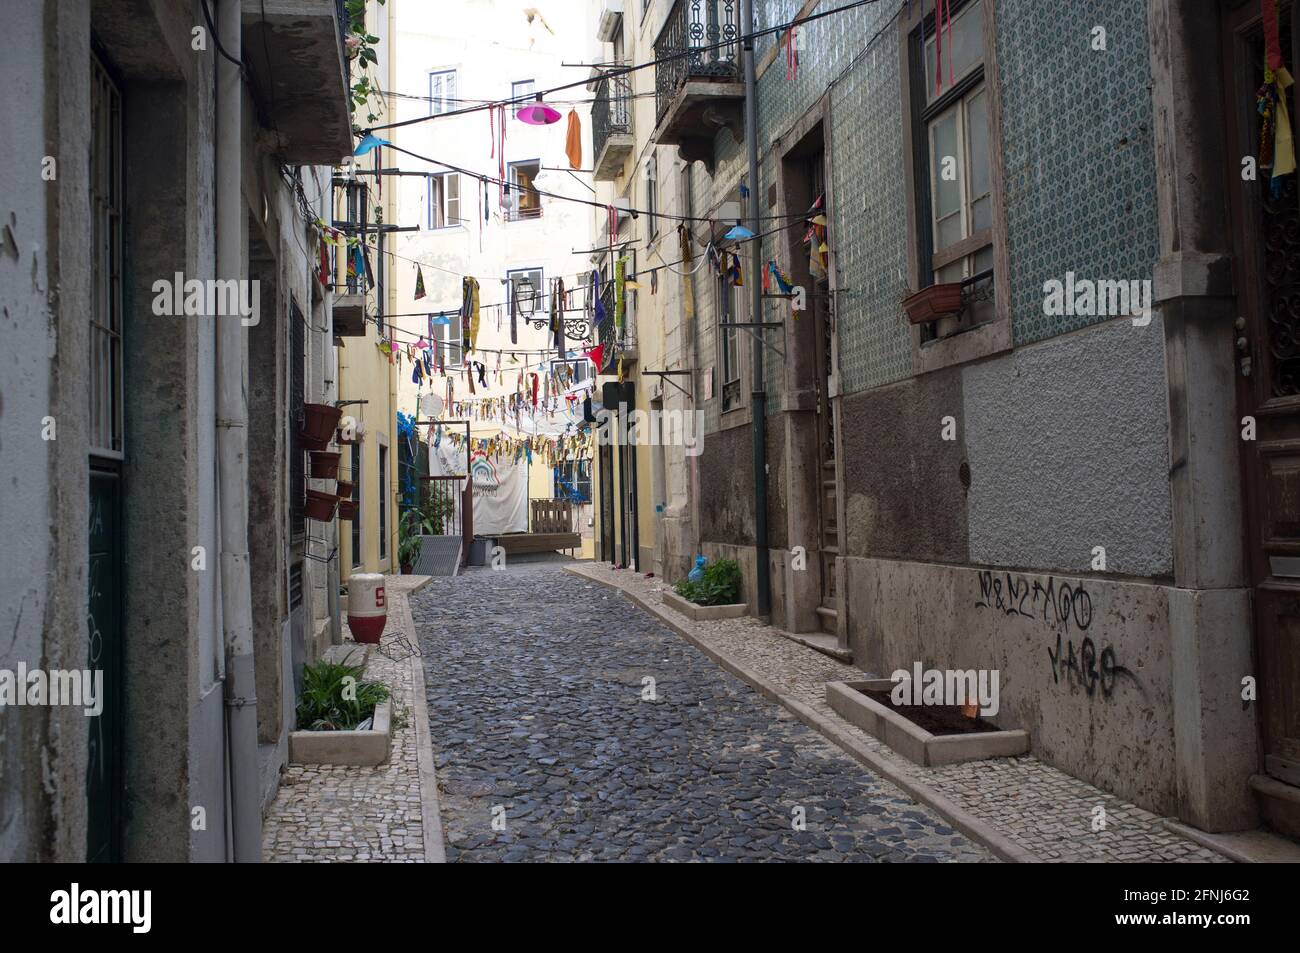 Das bunte, quirlige Gassenlabyrinth in der historischen Alfama a Lissabon. Die Viertel Alfama, Mouraria und Graça bilden die Altstadt von Lissabon Foto Stock